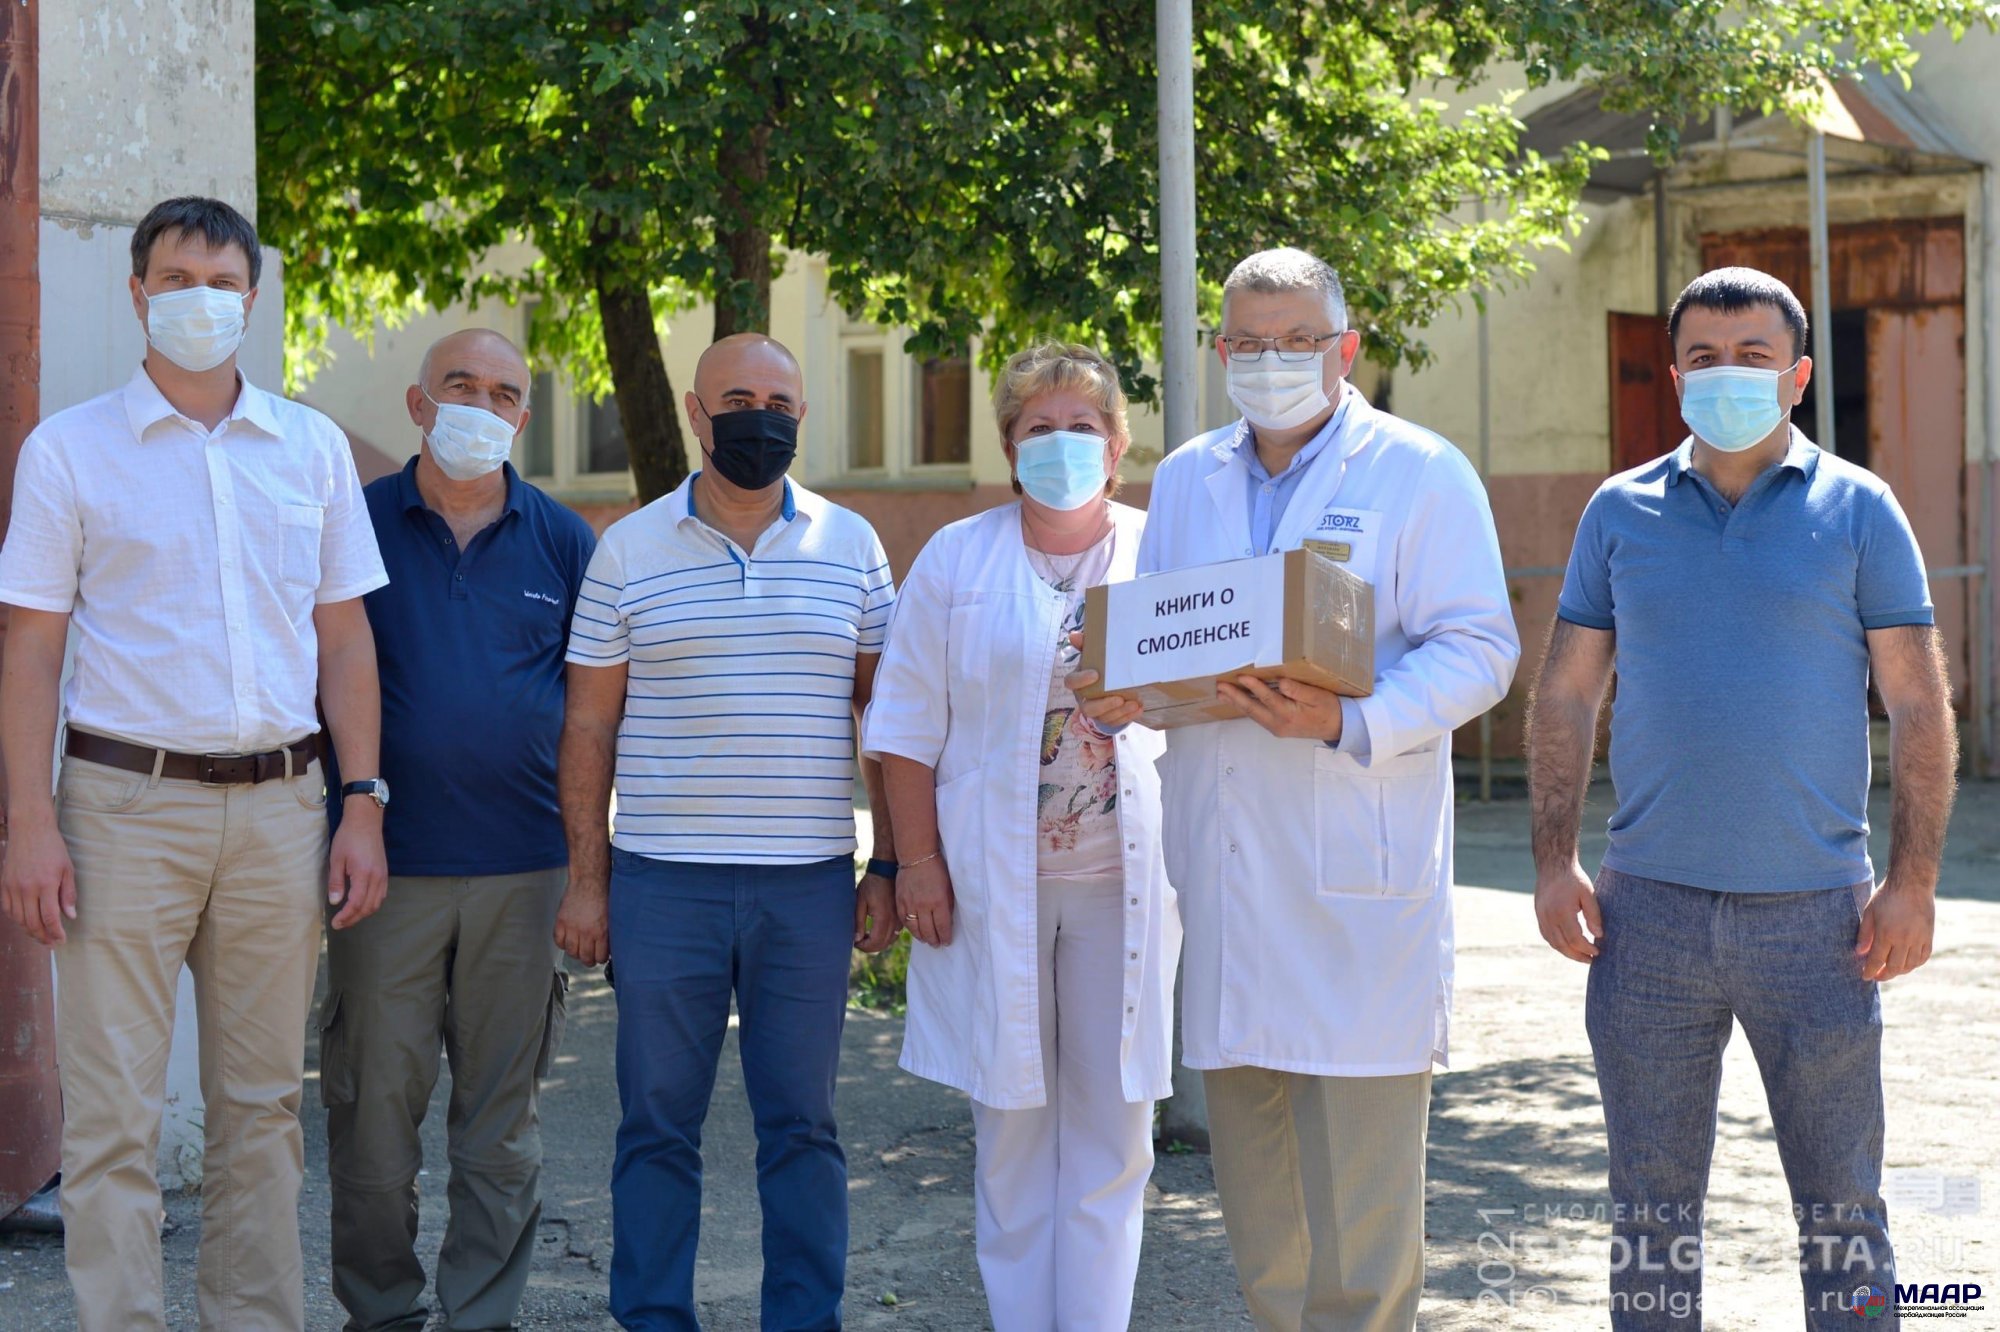 Представители азербайджанской диаспоры Смоленска организовали для больницы "Красный Крест" гуманитарную помощь